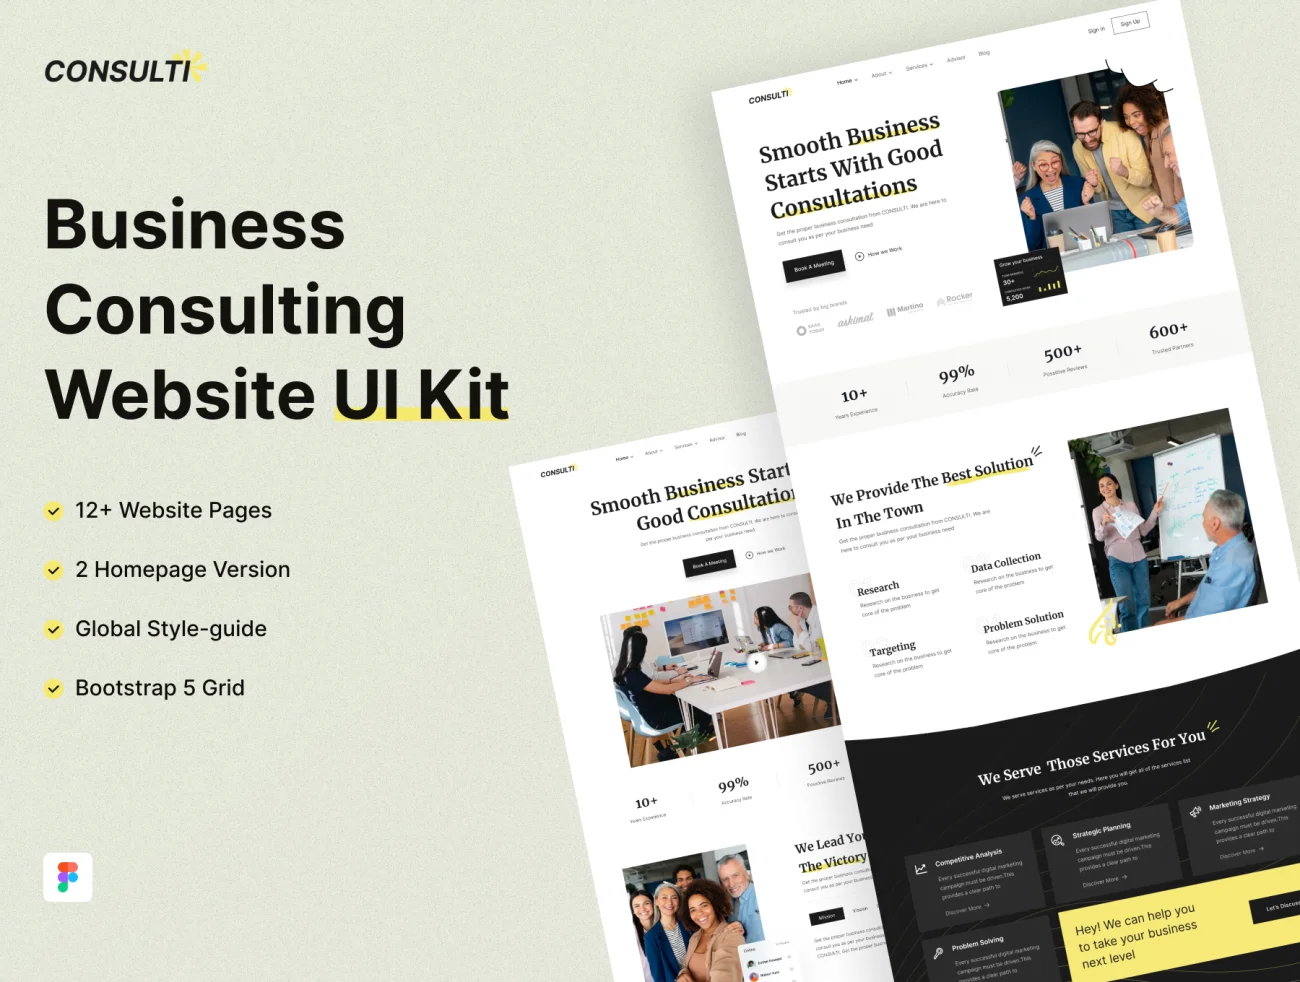 Consulti 商务咨询网站 UI 套件 Consulti - Business Consulting Website UI Kit缩略图到位啦UI